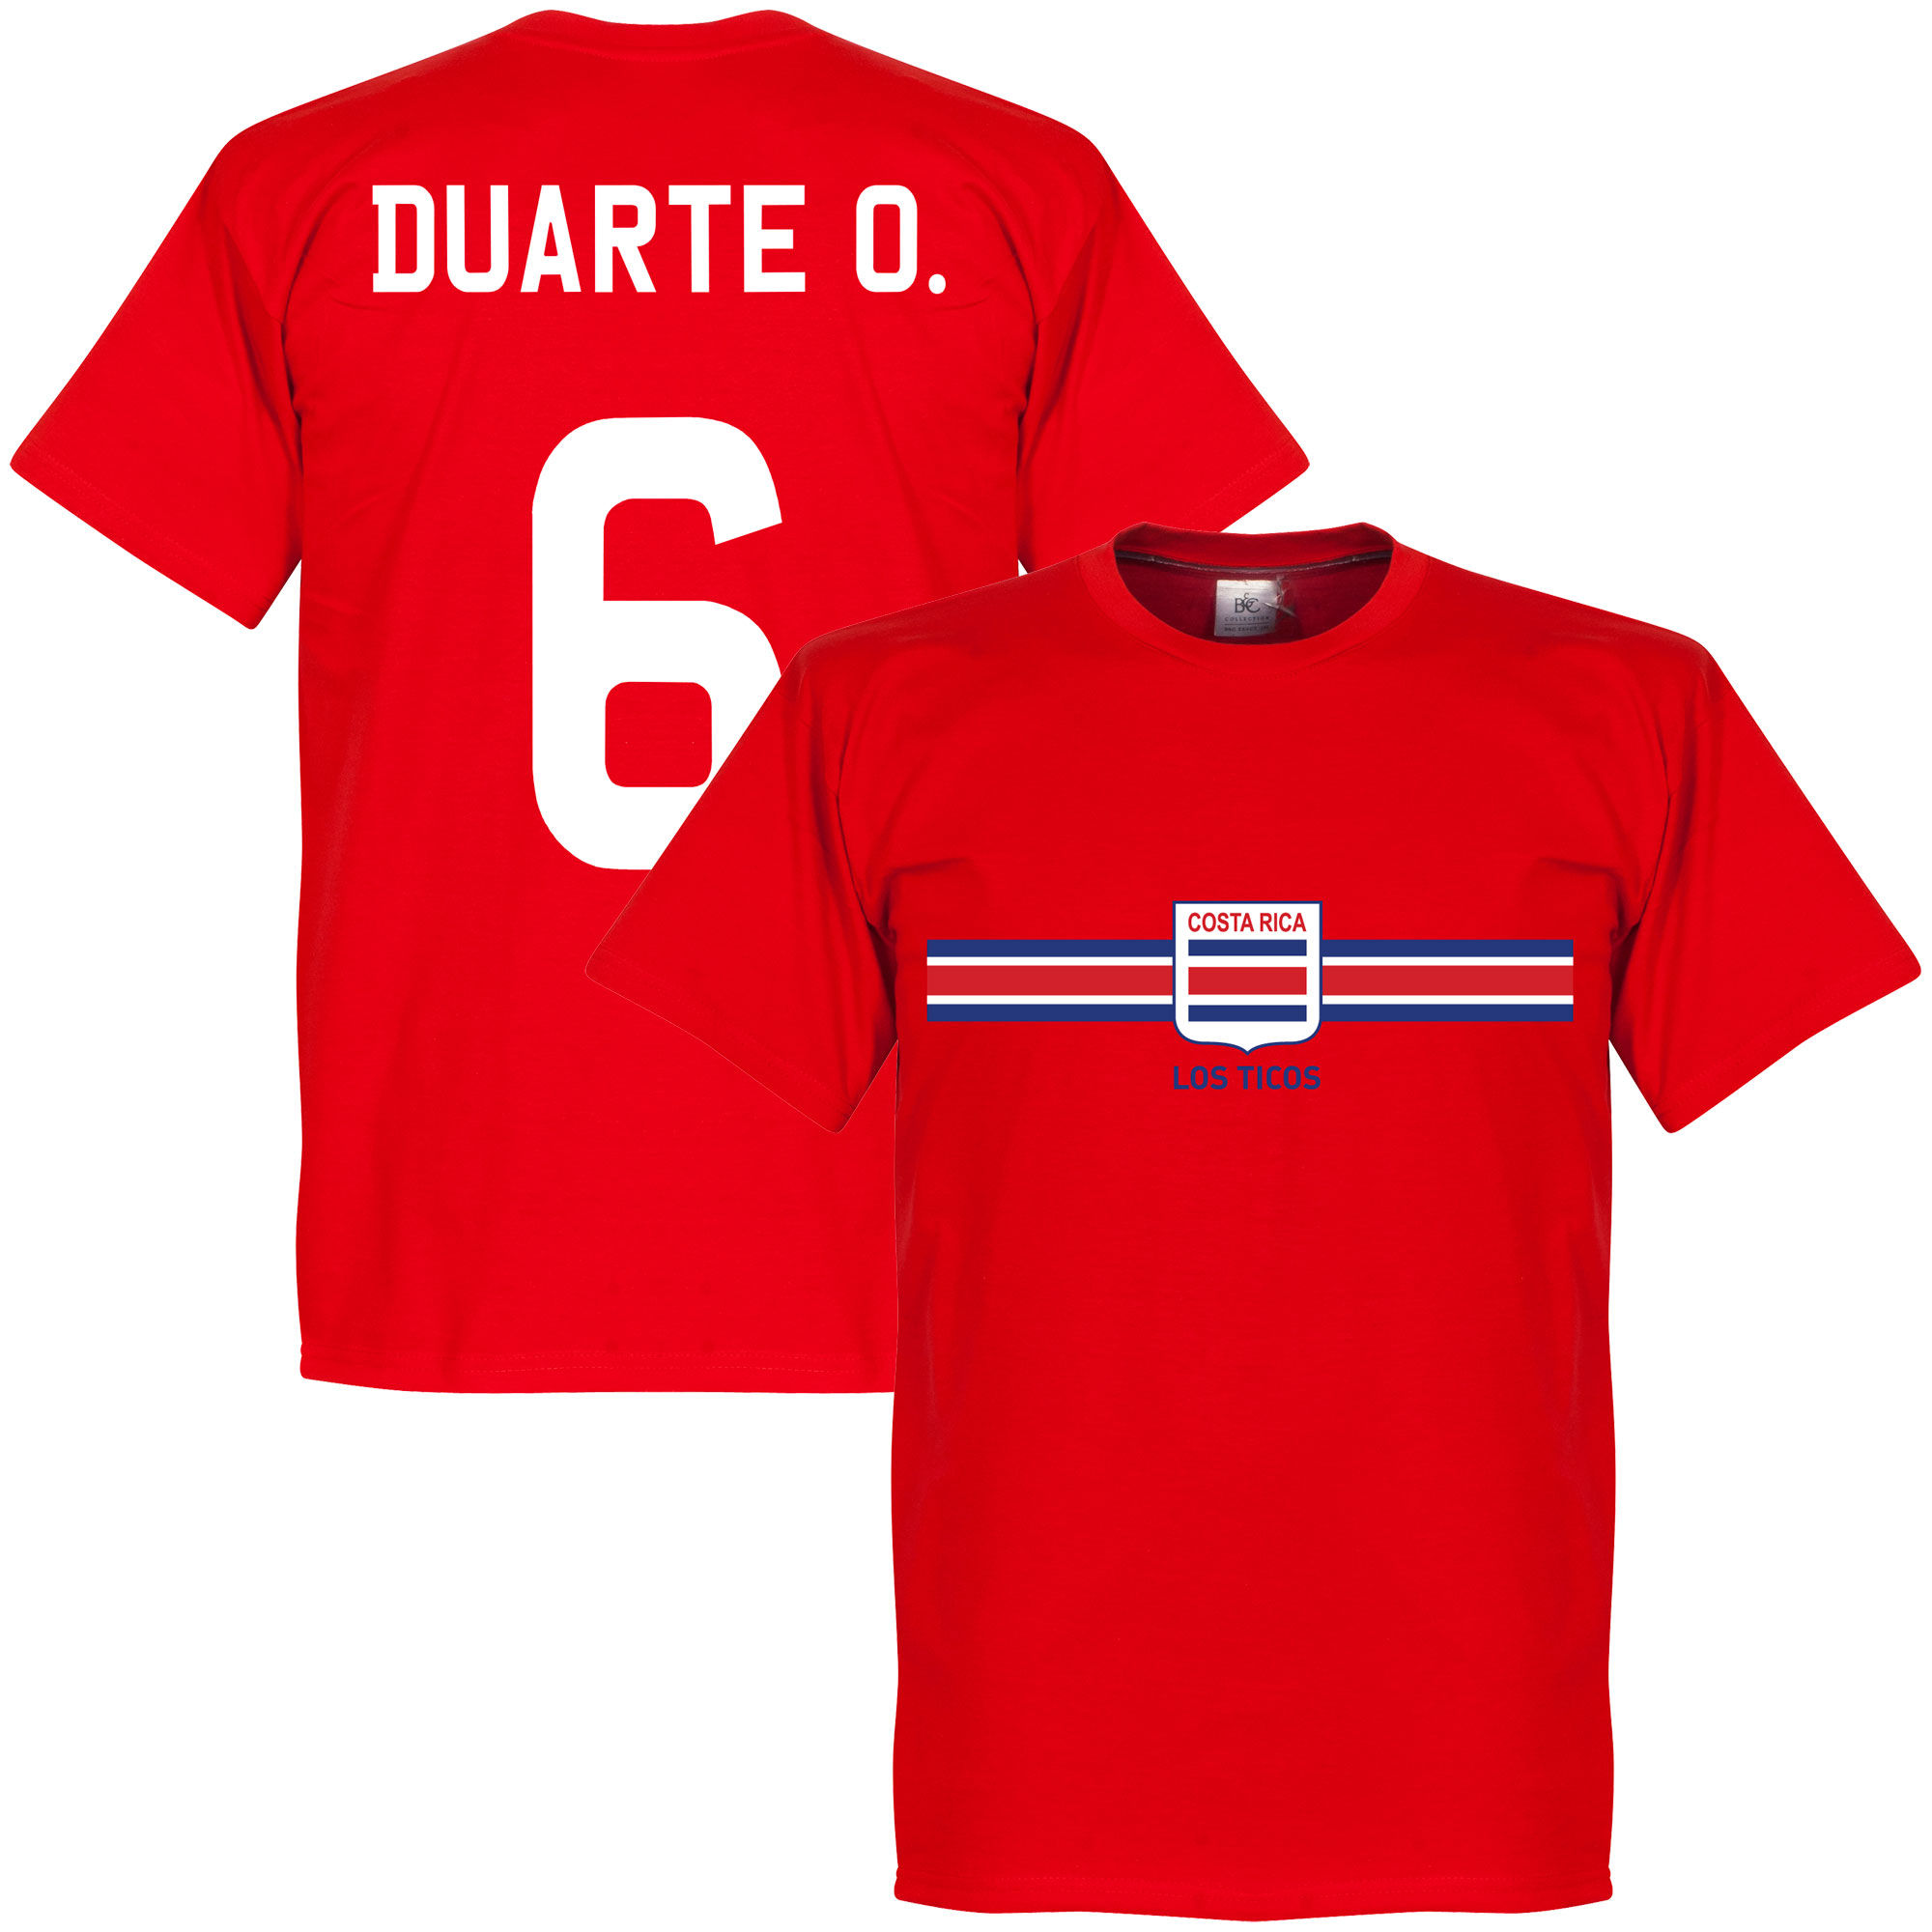 Kostarika - Tričko - červené, Óscar Duarte